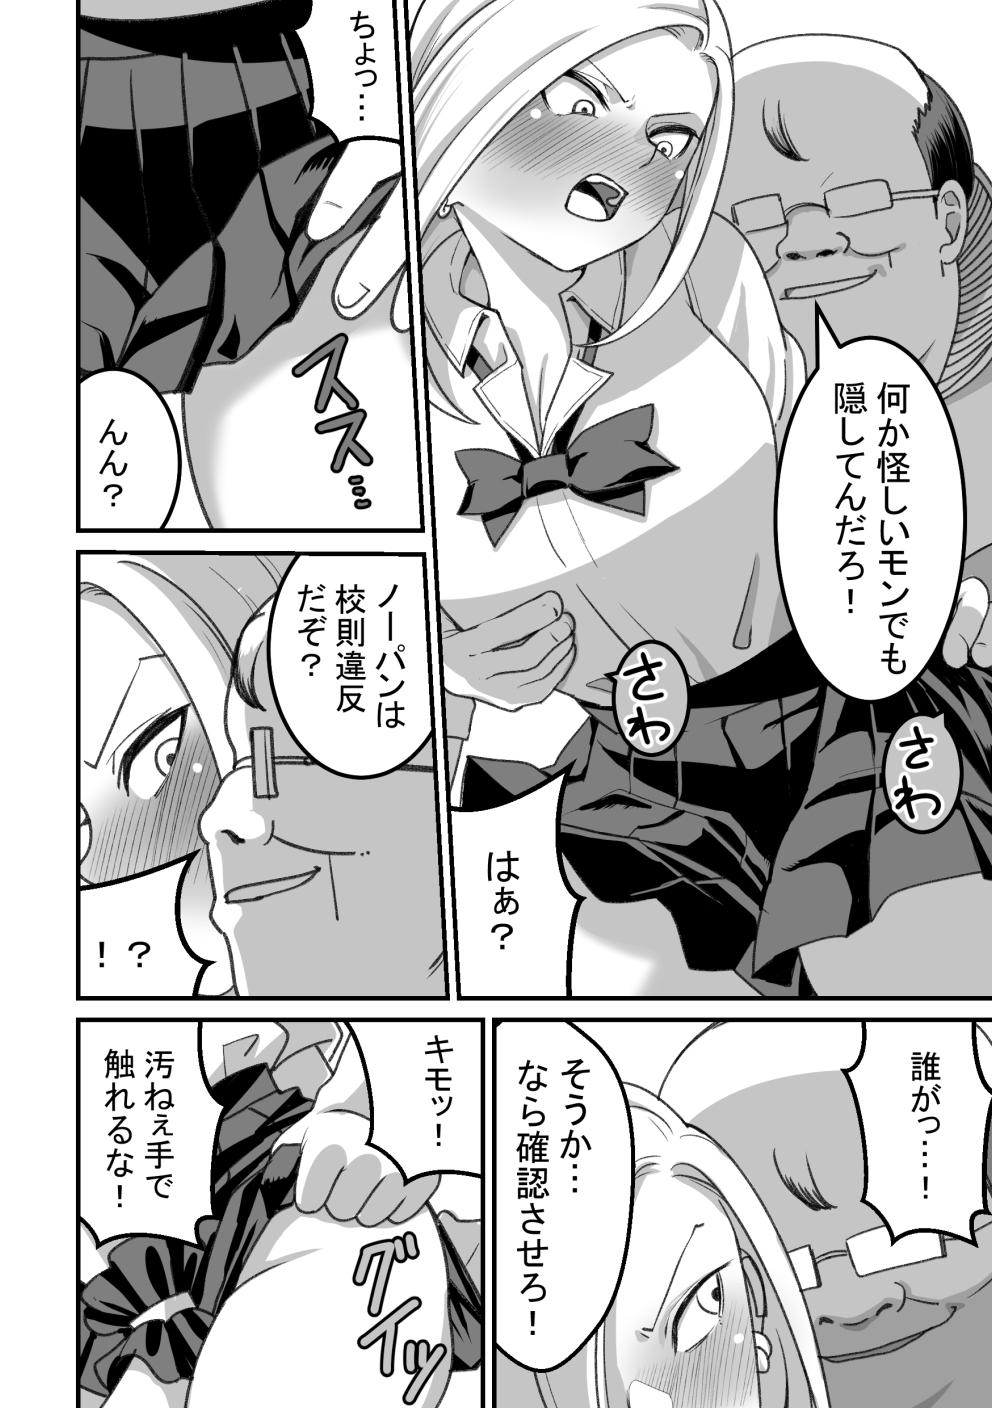 Nylons [Pell Club (Pelta Omori)] Nishino-san wa Saimin-jutsu ni Kakerarete... 2 Porra - Page 9